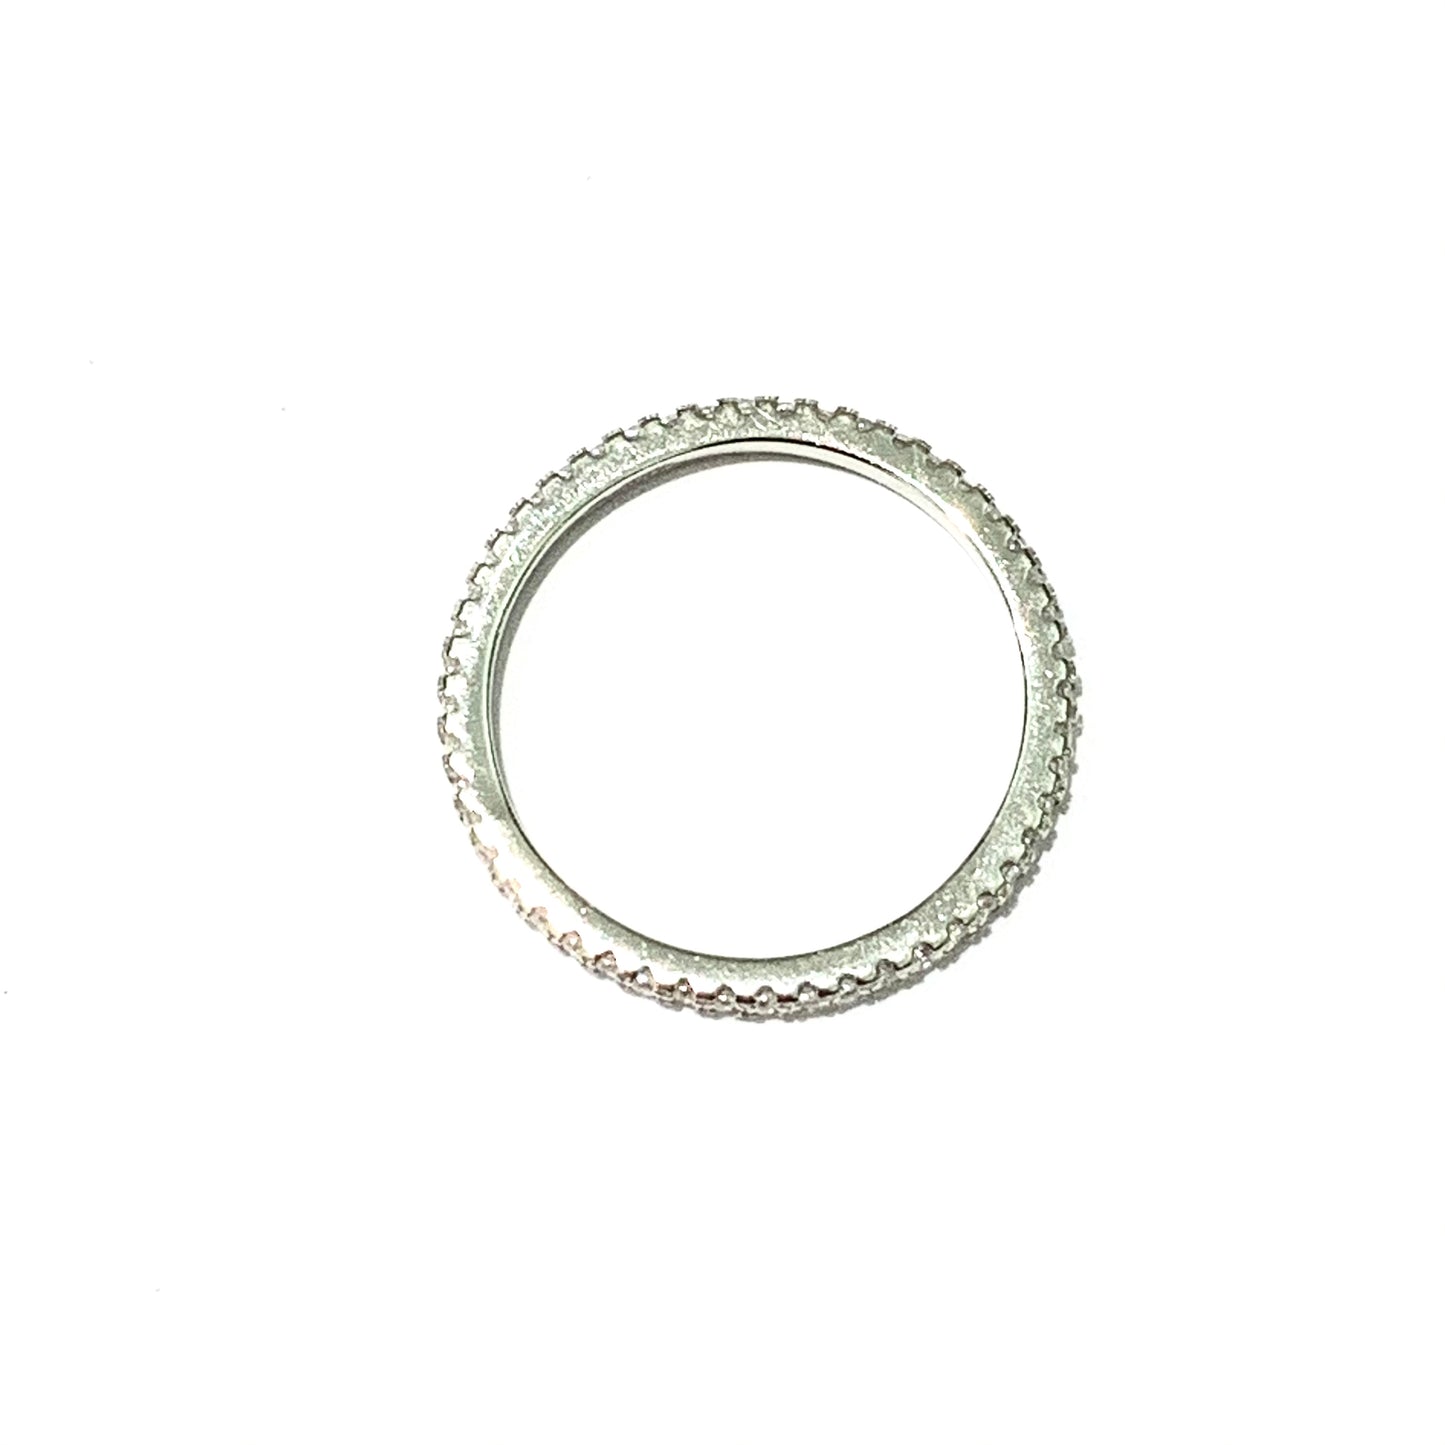 Anello veretta in argento con un giro di zirconi.  Larghezza 0,1 cm.  Più misure disponibili.